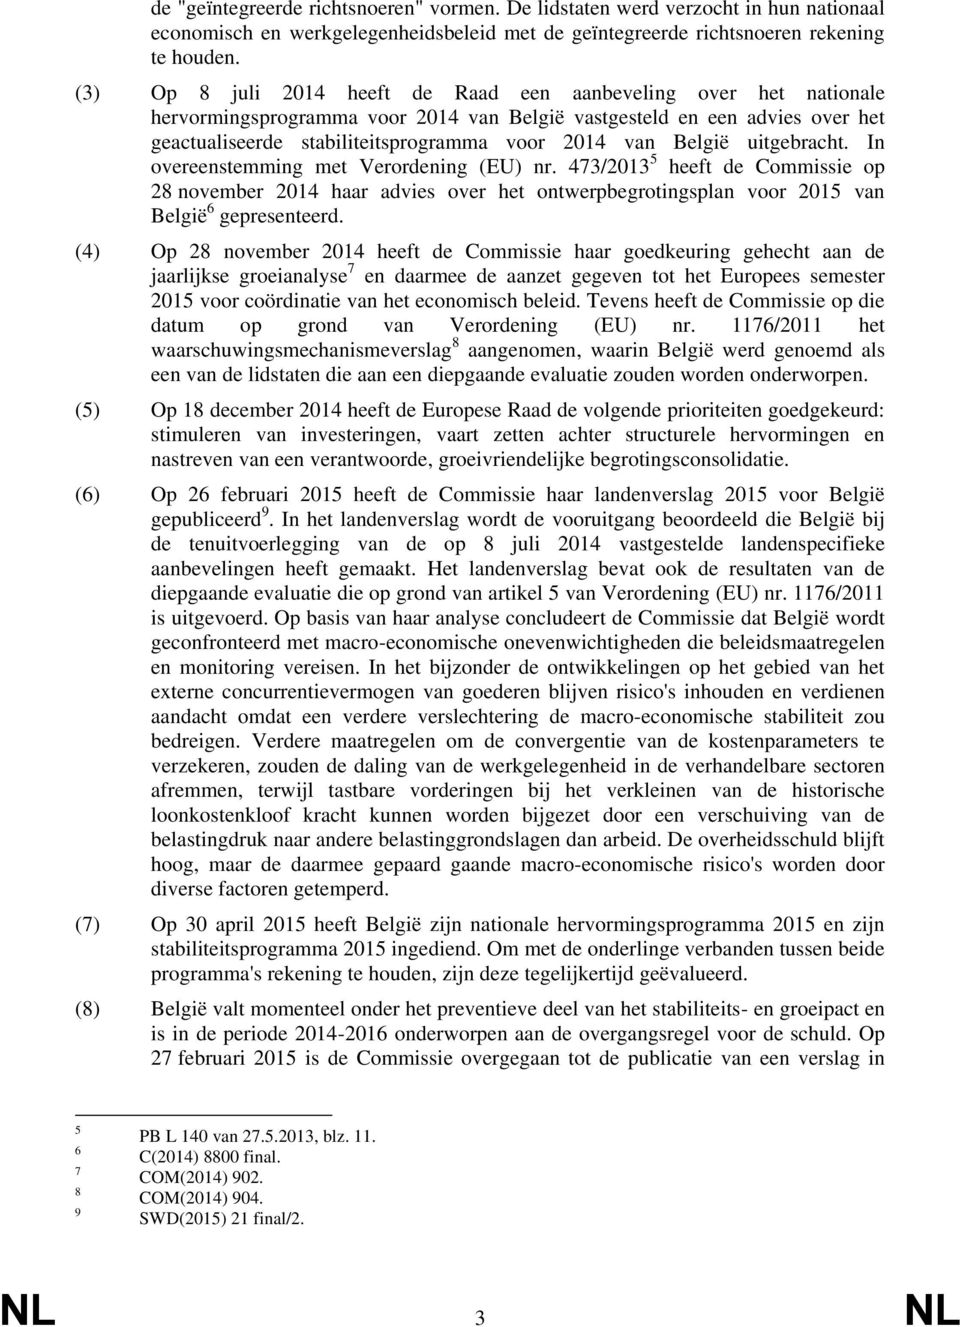 België uitgebracht. In overeenstemming met Verordening (EU) nr. 473/2013 5 heeft de Commissie op 28 november 2014 haar advies over het ontwerpbegrotingsplan voor 2015 van België 6 gepresenteerd.